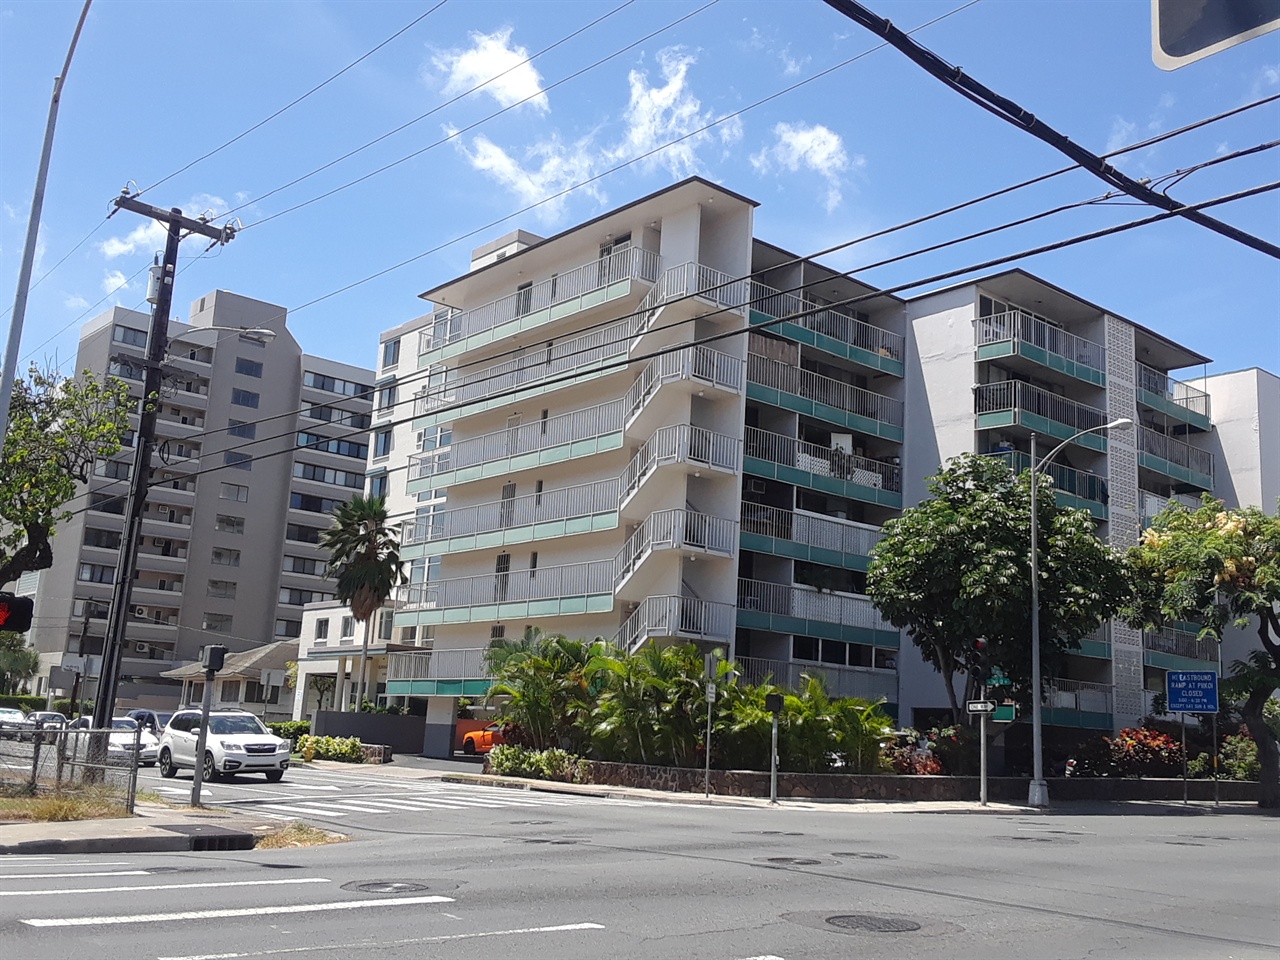 하와이 도심에 자리한 대형 주택가 모습. 월평균 3000달러 이상의 임대료를 지불해야 한다. 